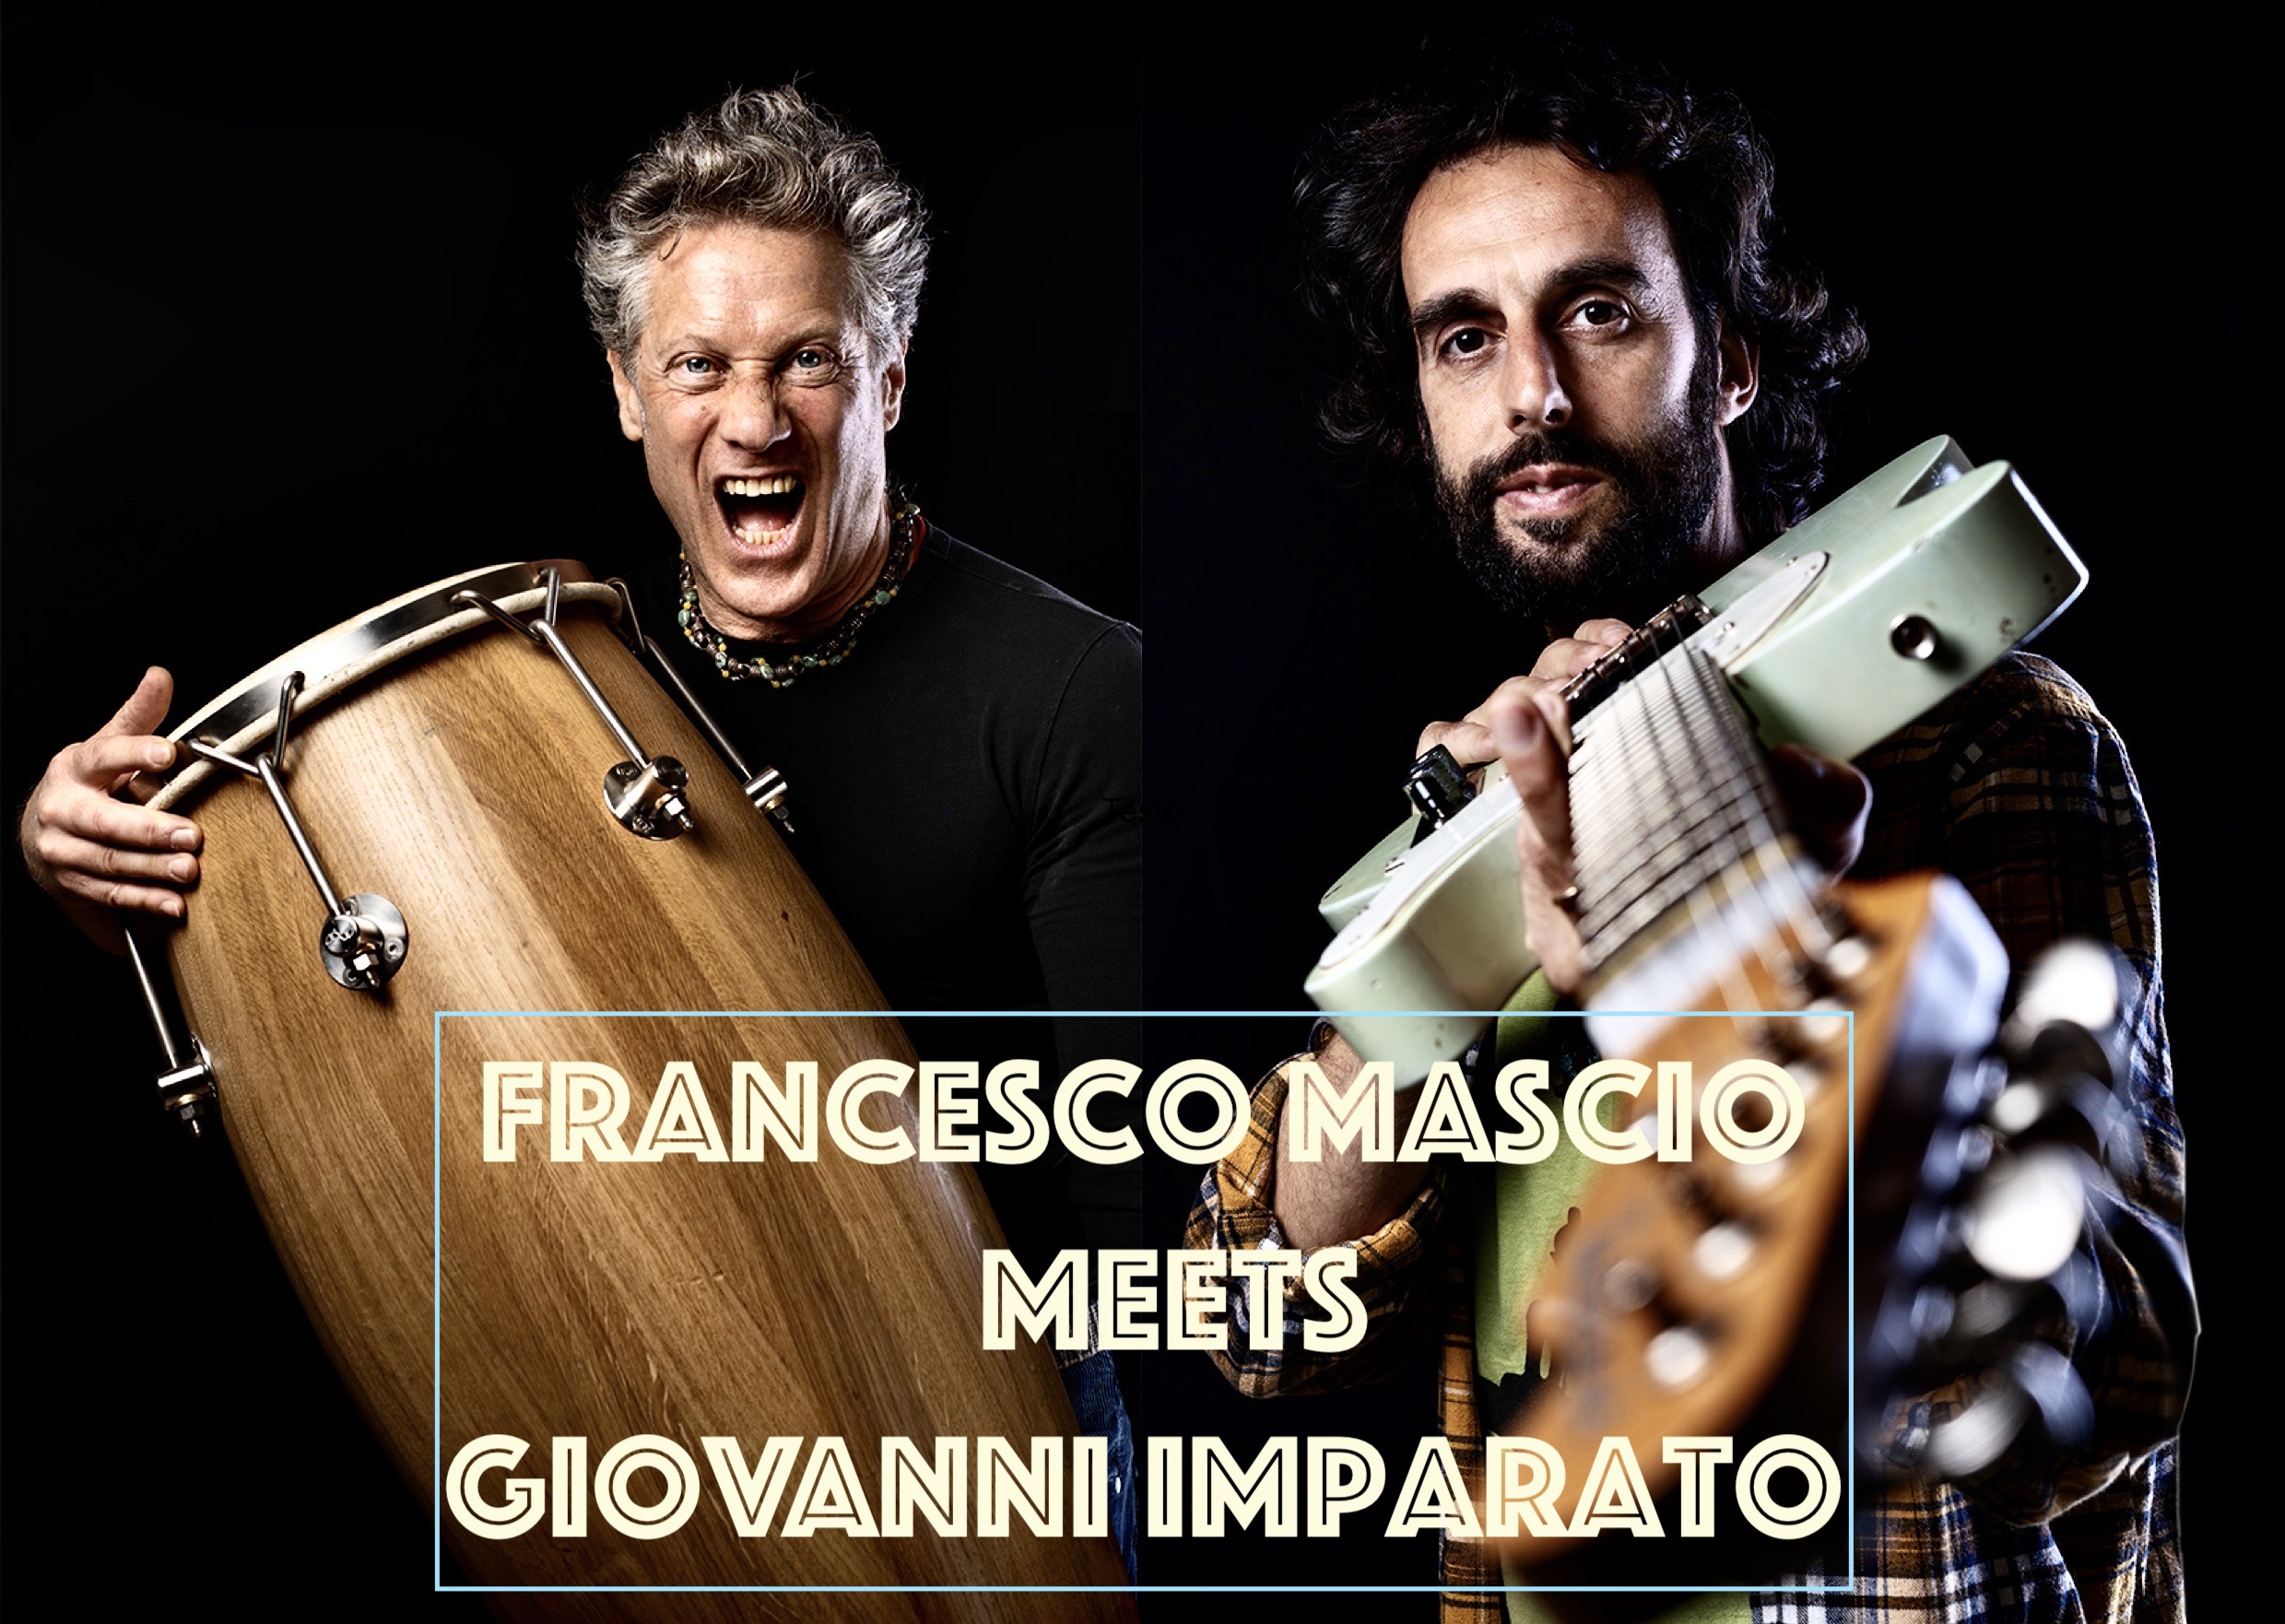 Francesco Mascio meets Giovanni Imparato